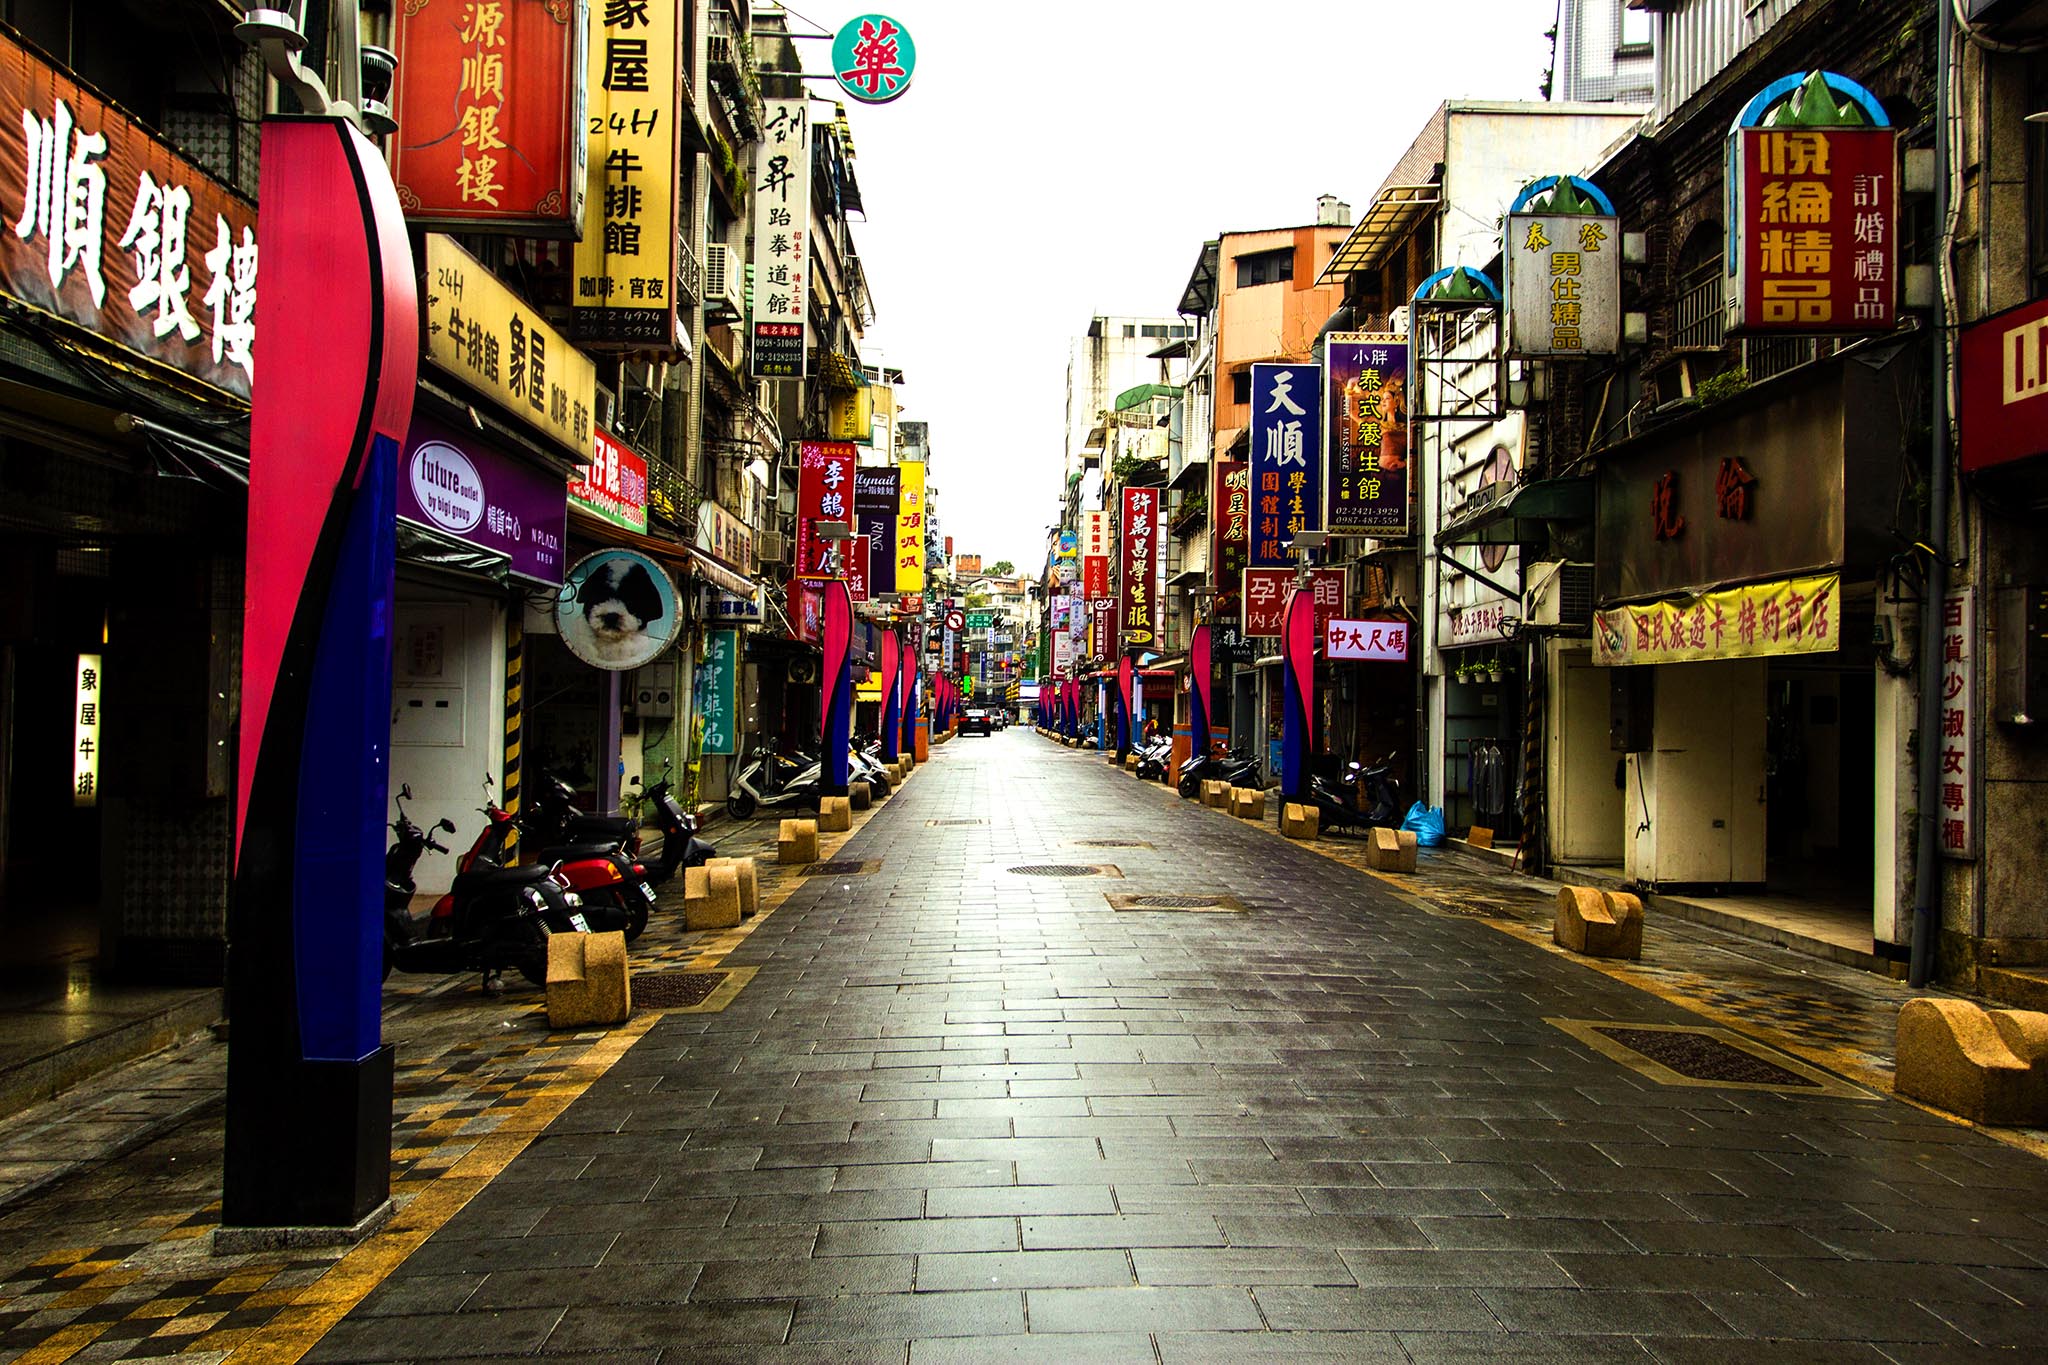 台北8天小资徒步火车之旅,夜市吃个够,经典景点游玩详情分享 